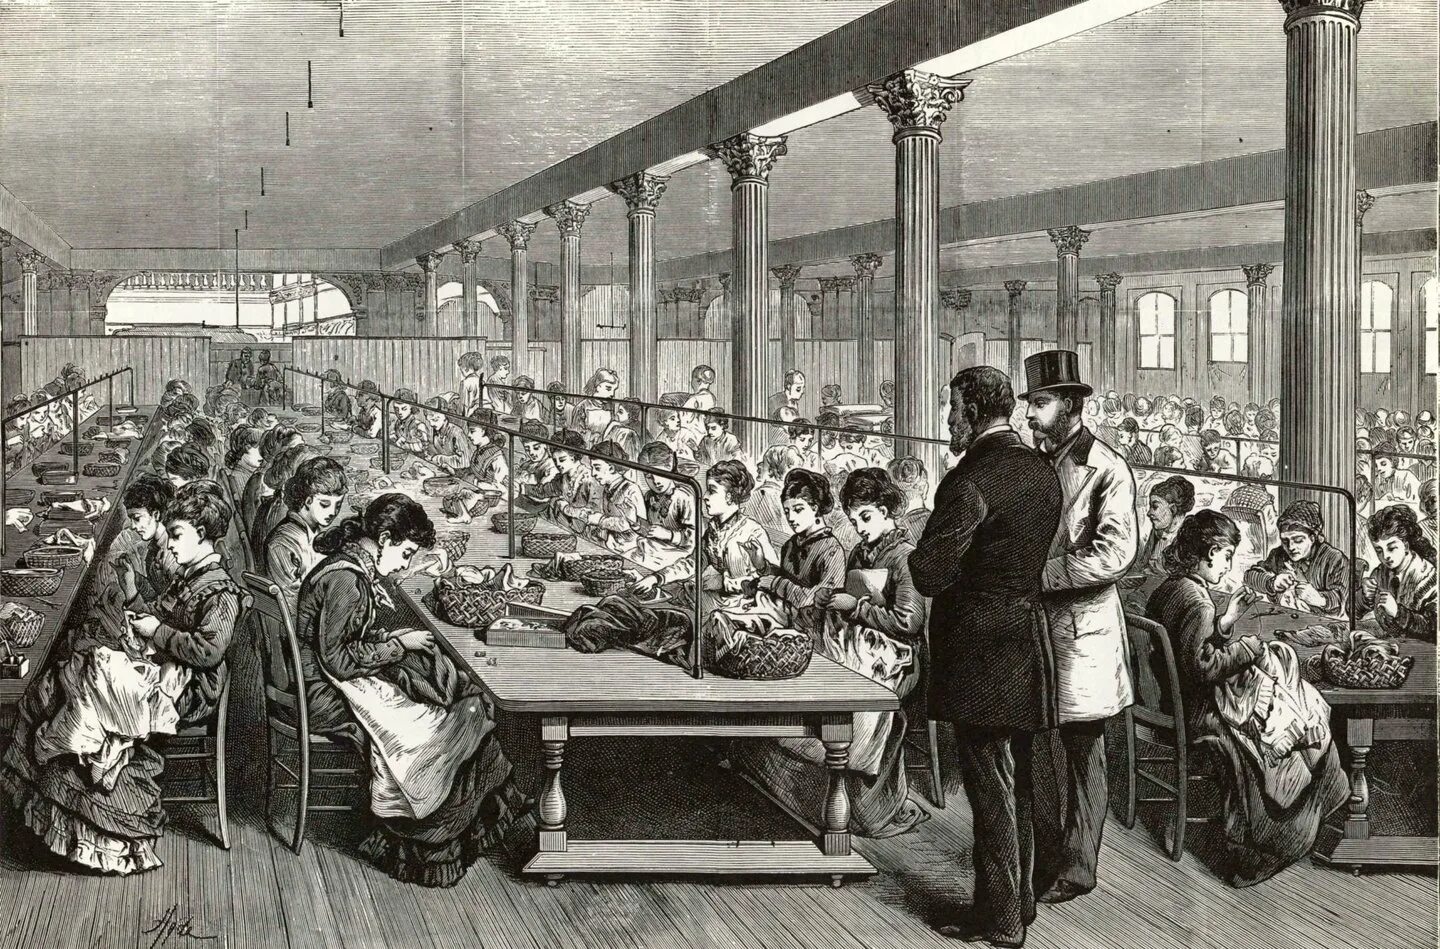 Industrial society. Промышленная революция в Англии 19 век. Индустриальное общество США 19 век. Промышленный переворот в США 19 век. Швейная фабрика Зингера 19 век США.